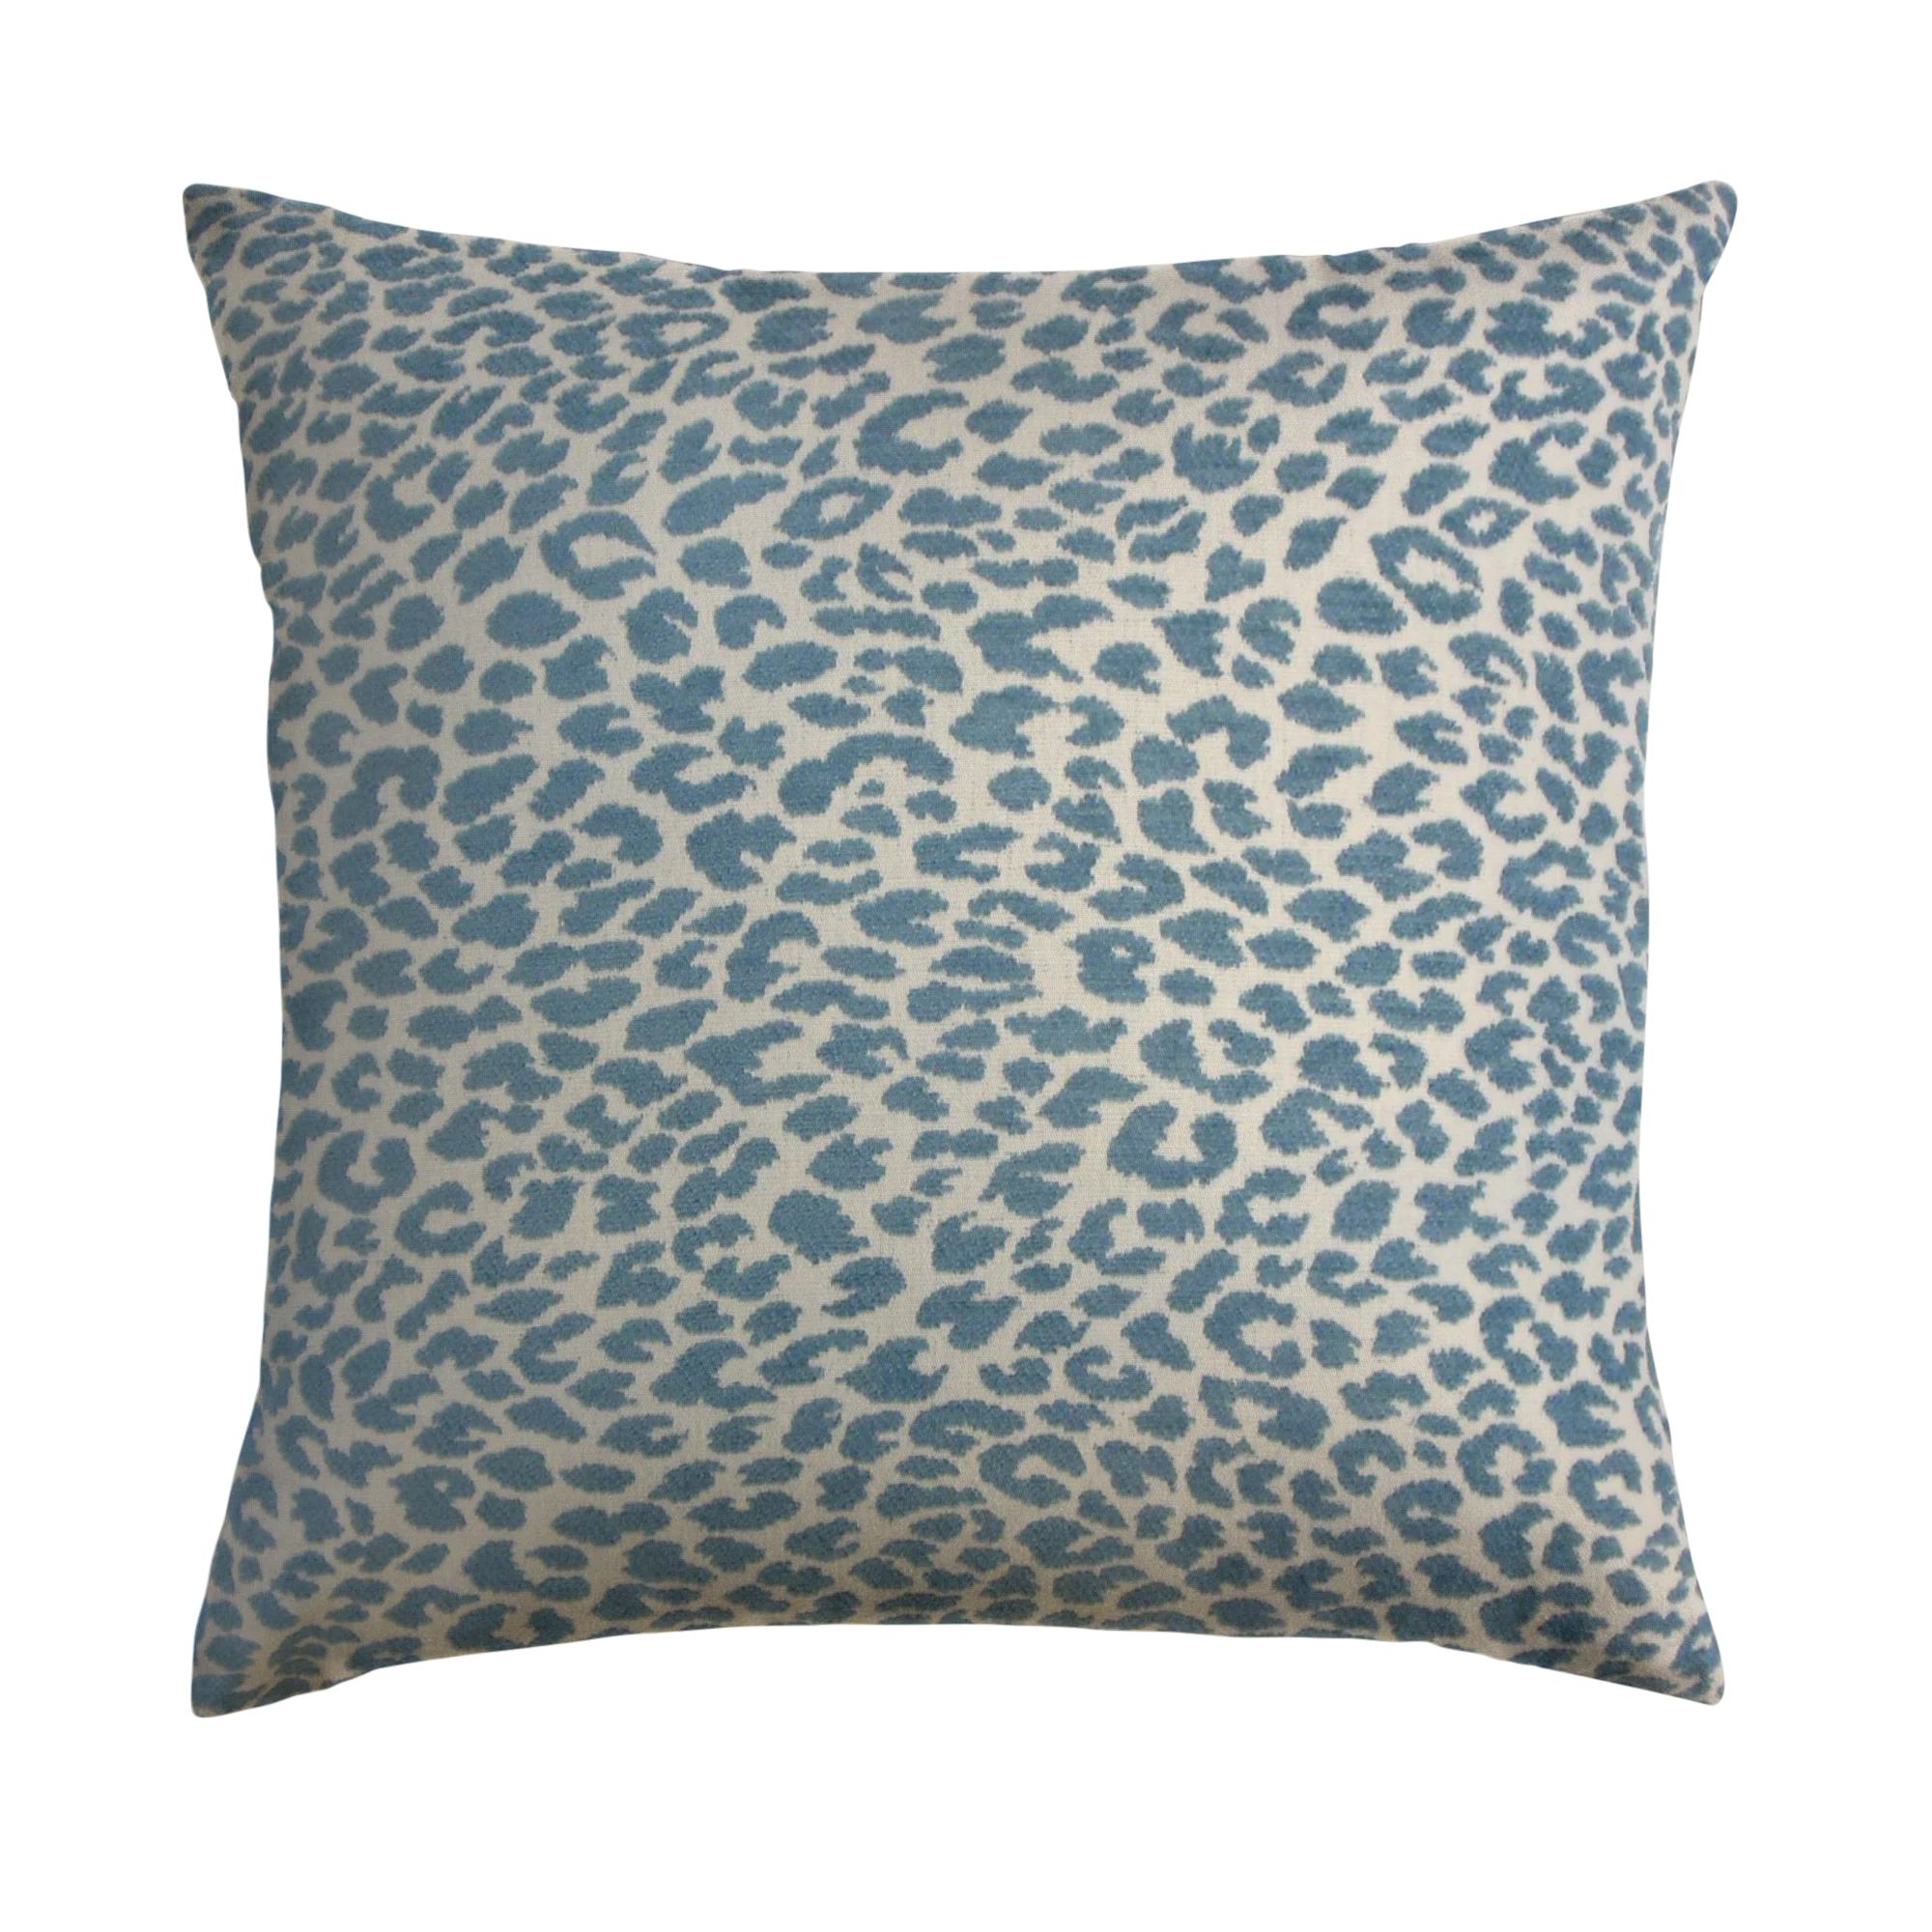 Friel Animal Print Throw Pillow | Wayfair Professional